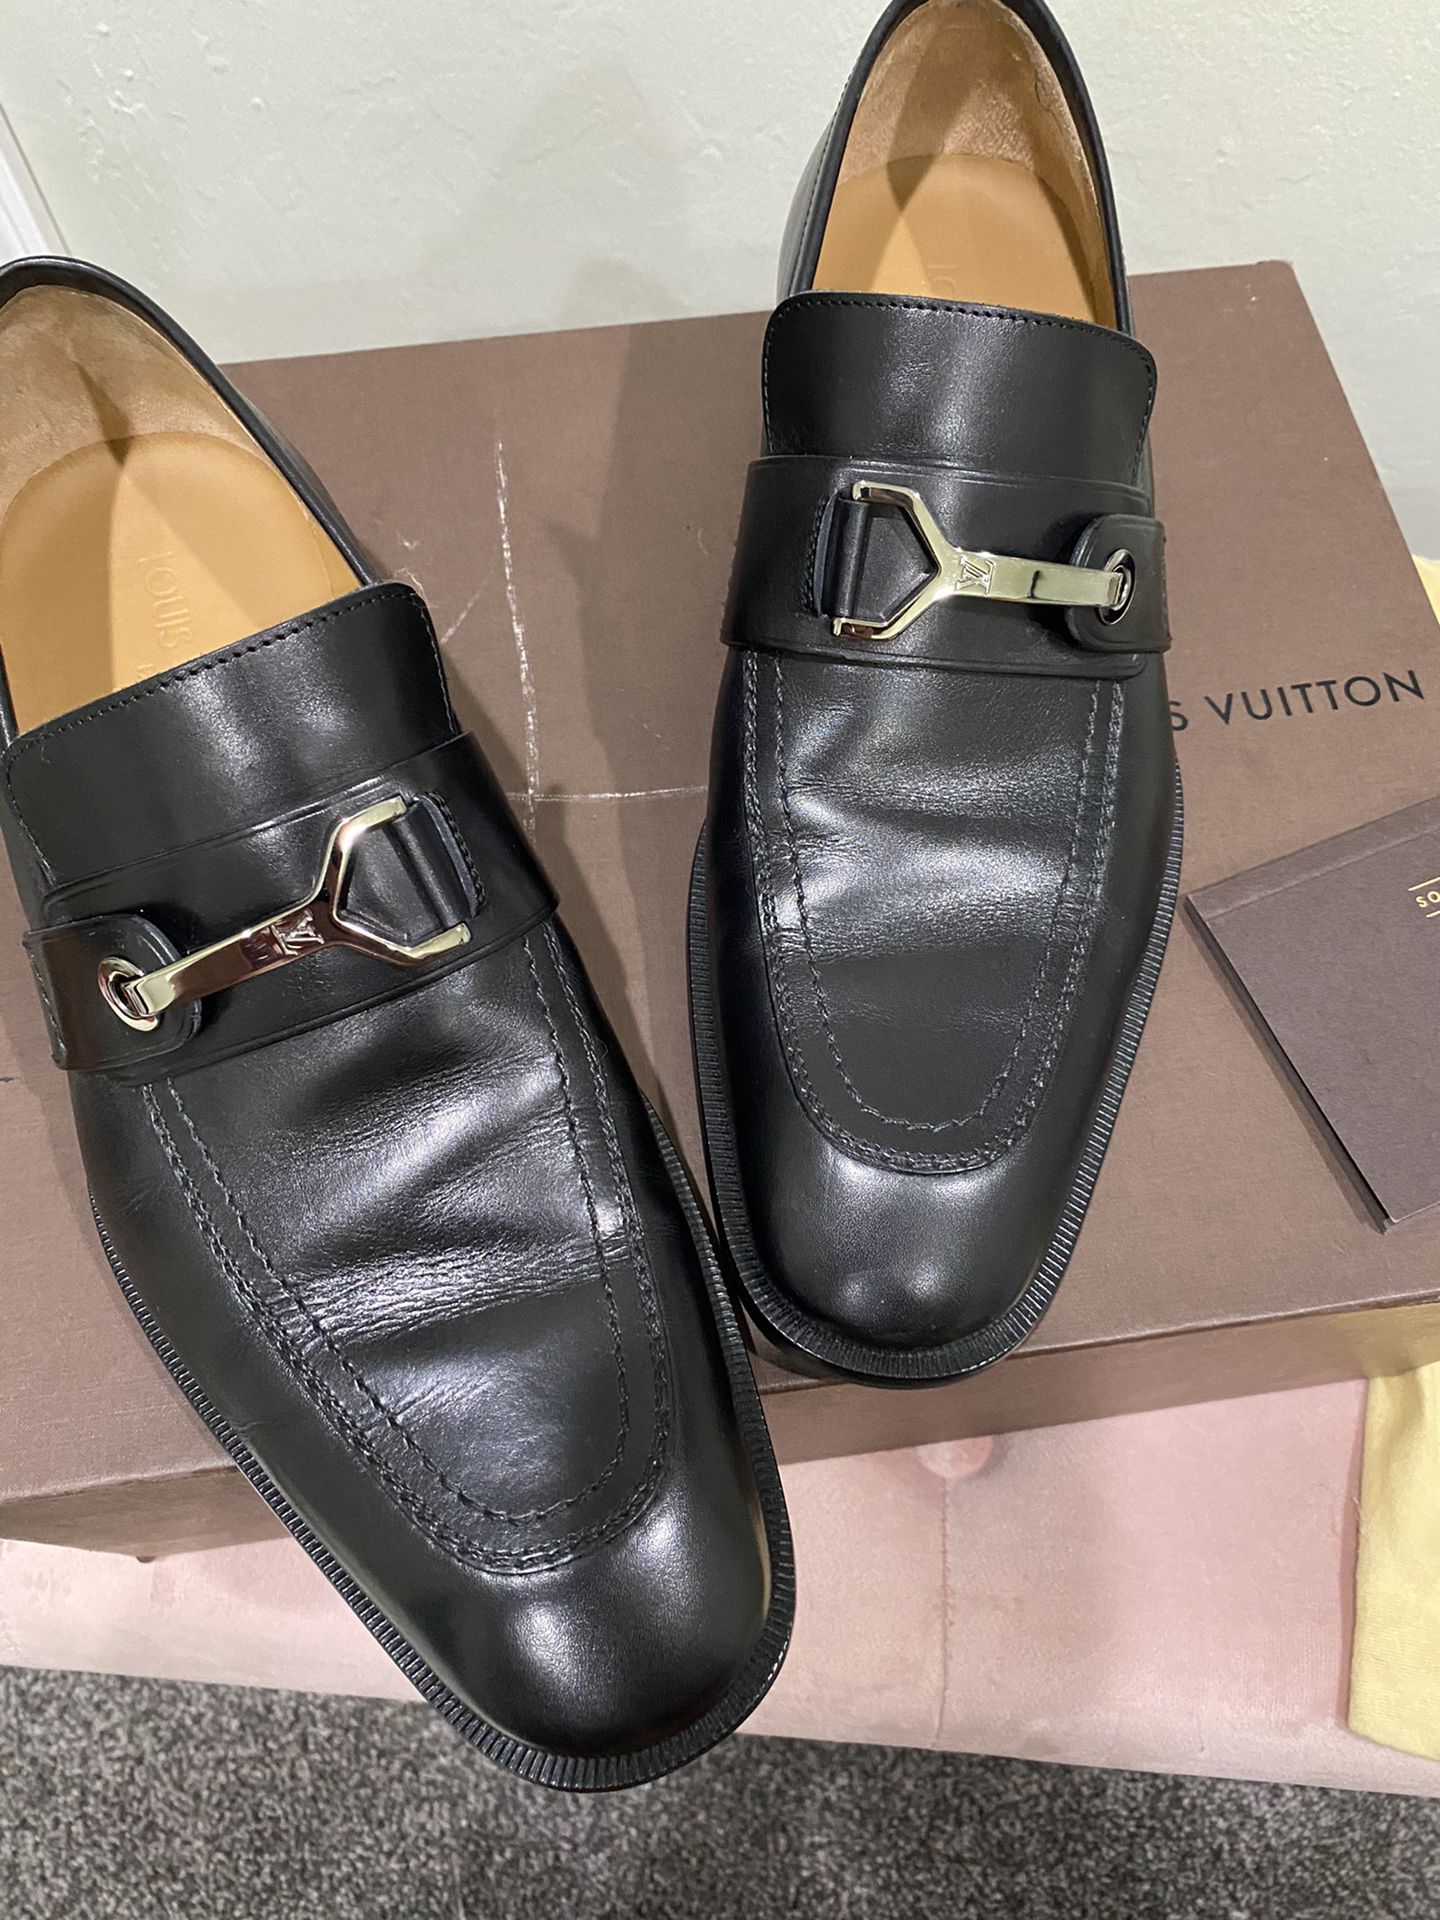 TAKING OFFERS Authentic Louis Vuitton men shoes